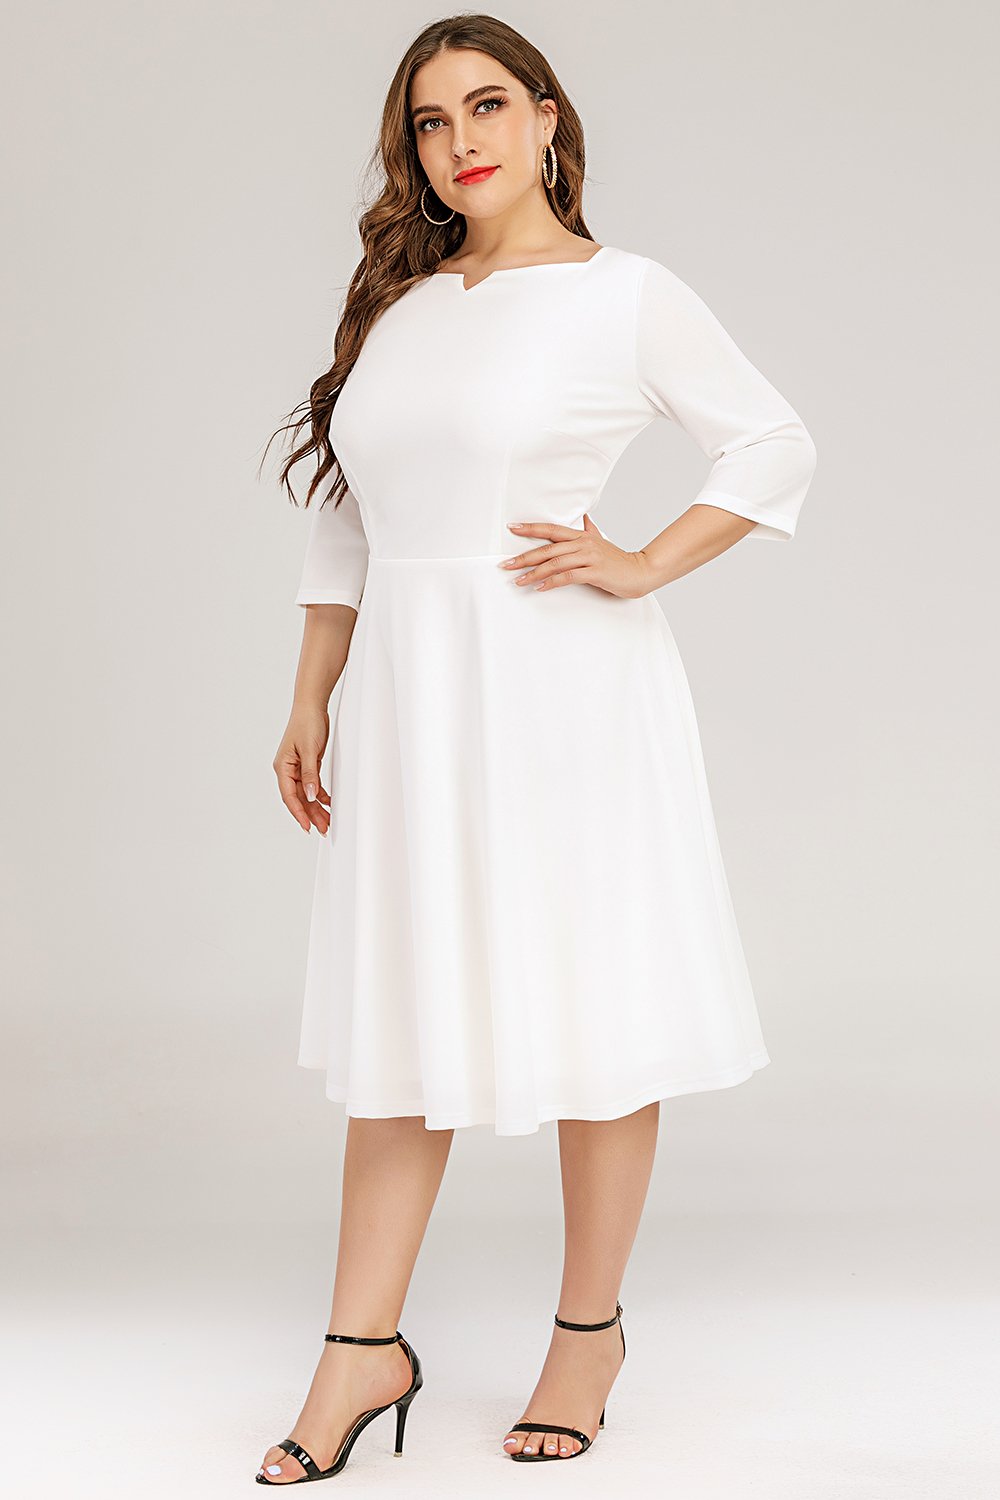 Plus Size White Formal Dress